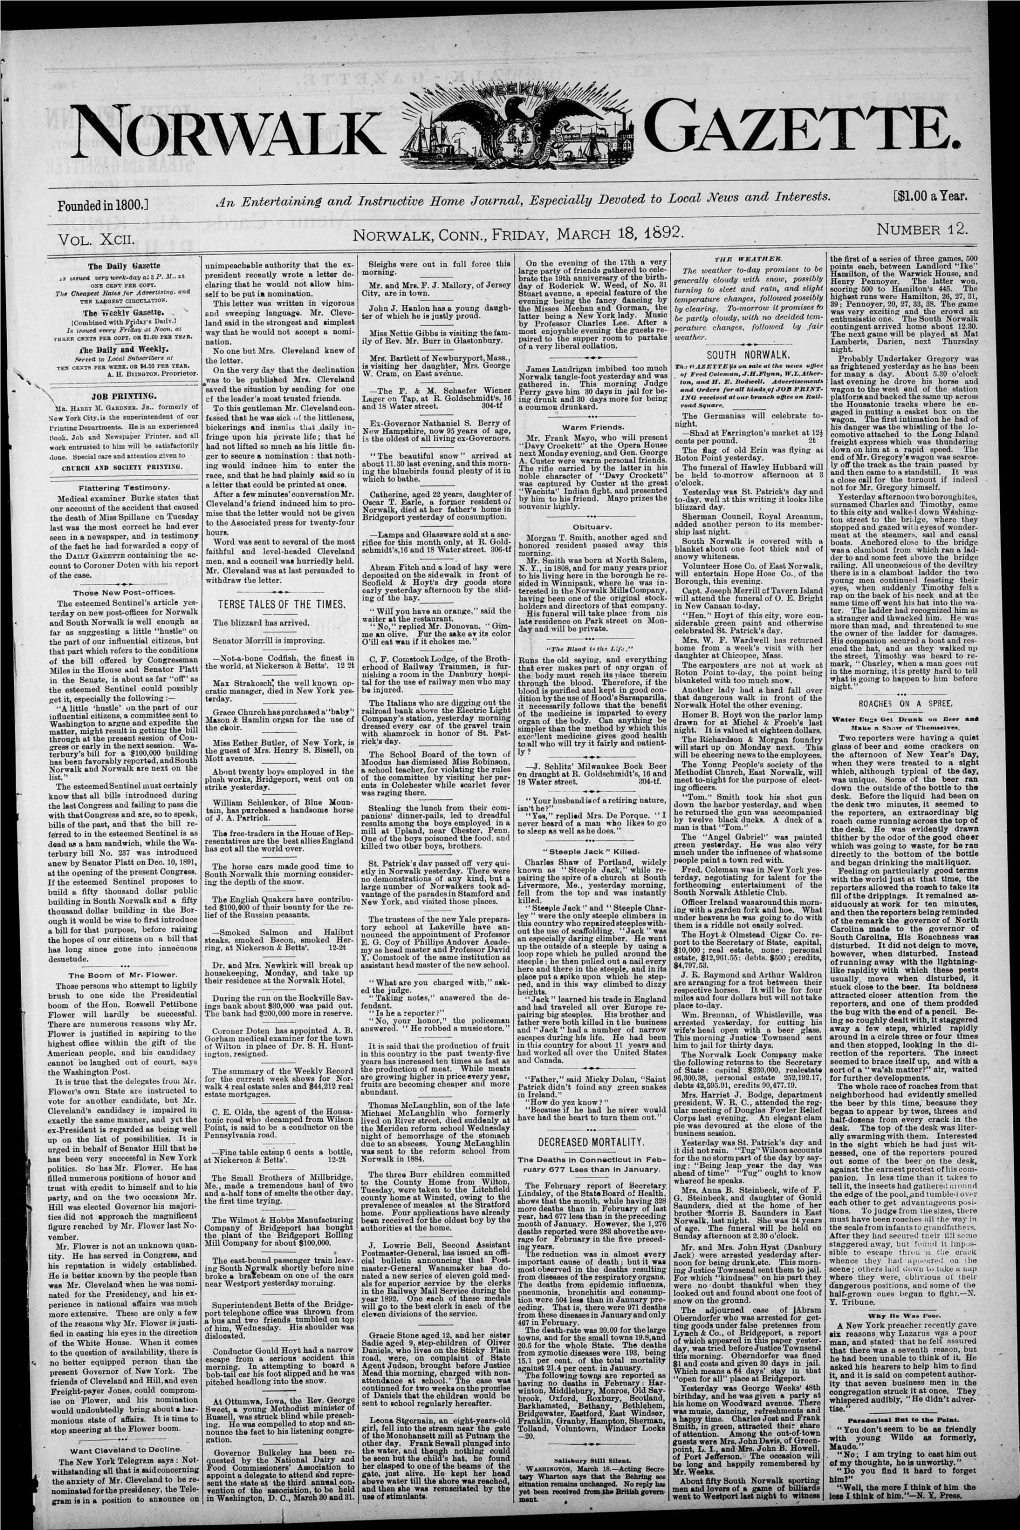 Vol. Xcii. Norwalk, Conn., Friday, March 18, 1892